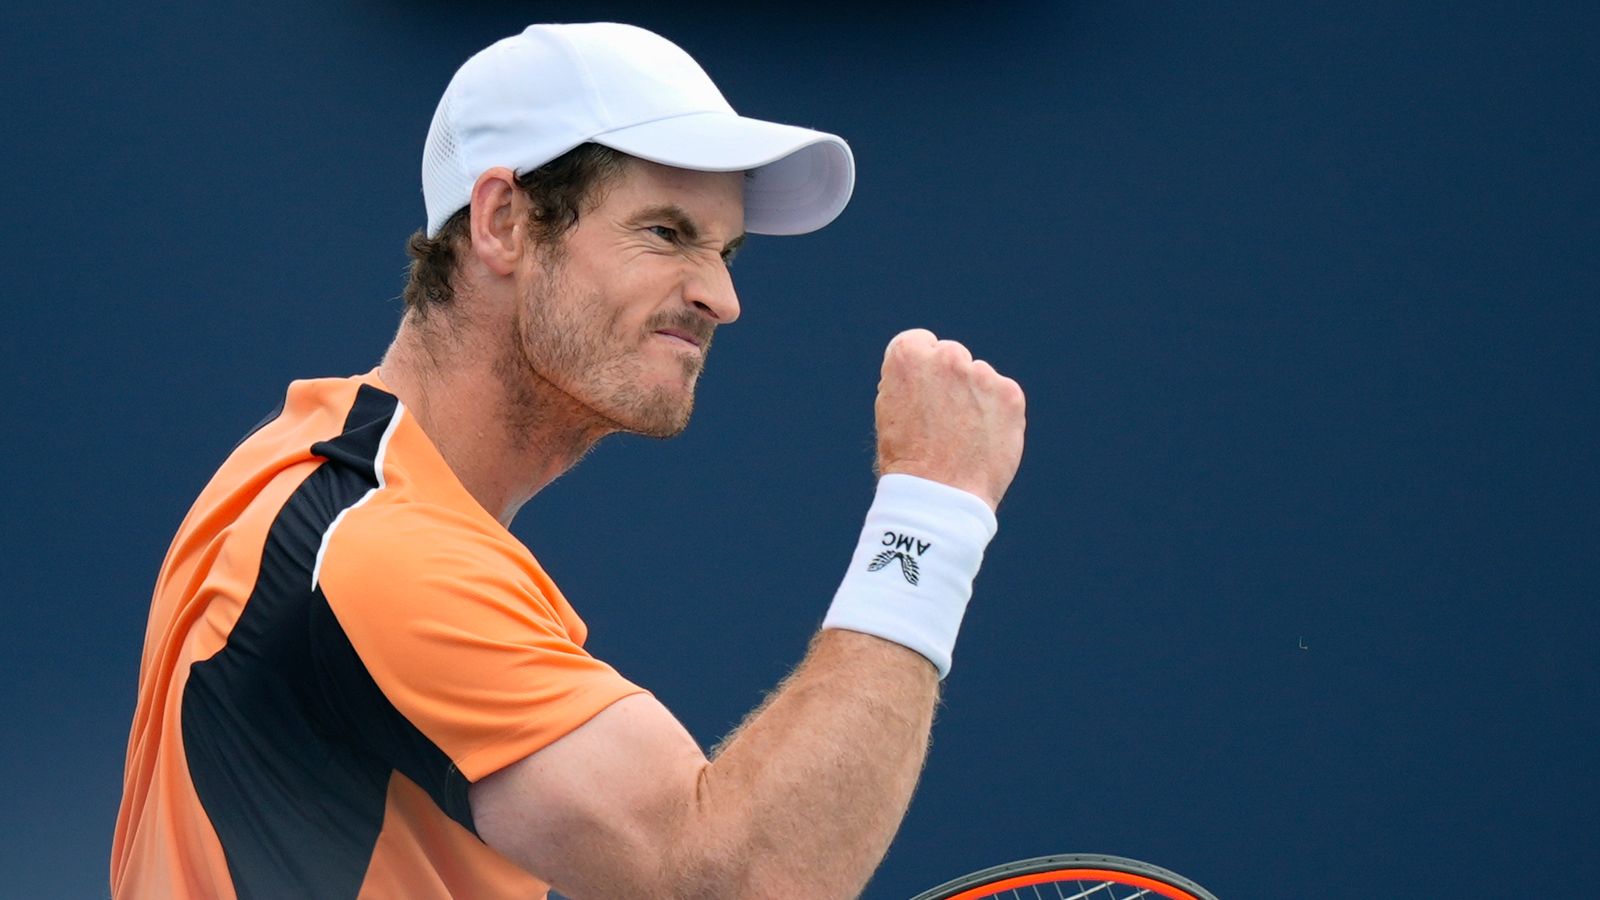 Andy Murray remporte son premier match depuis mars alors qu’il revient à Bordeaux après une blessure à la cheville |  Actualités tennistiques